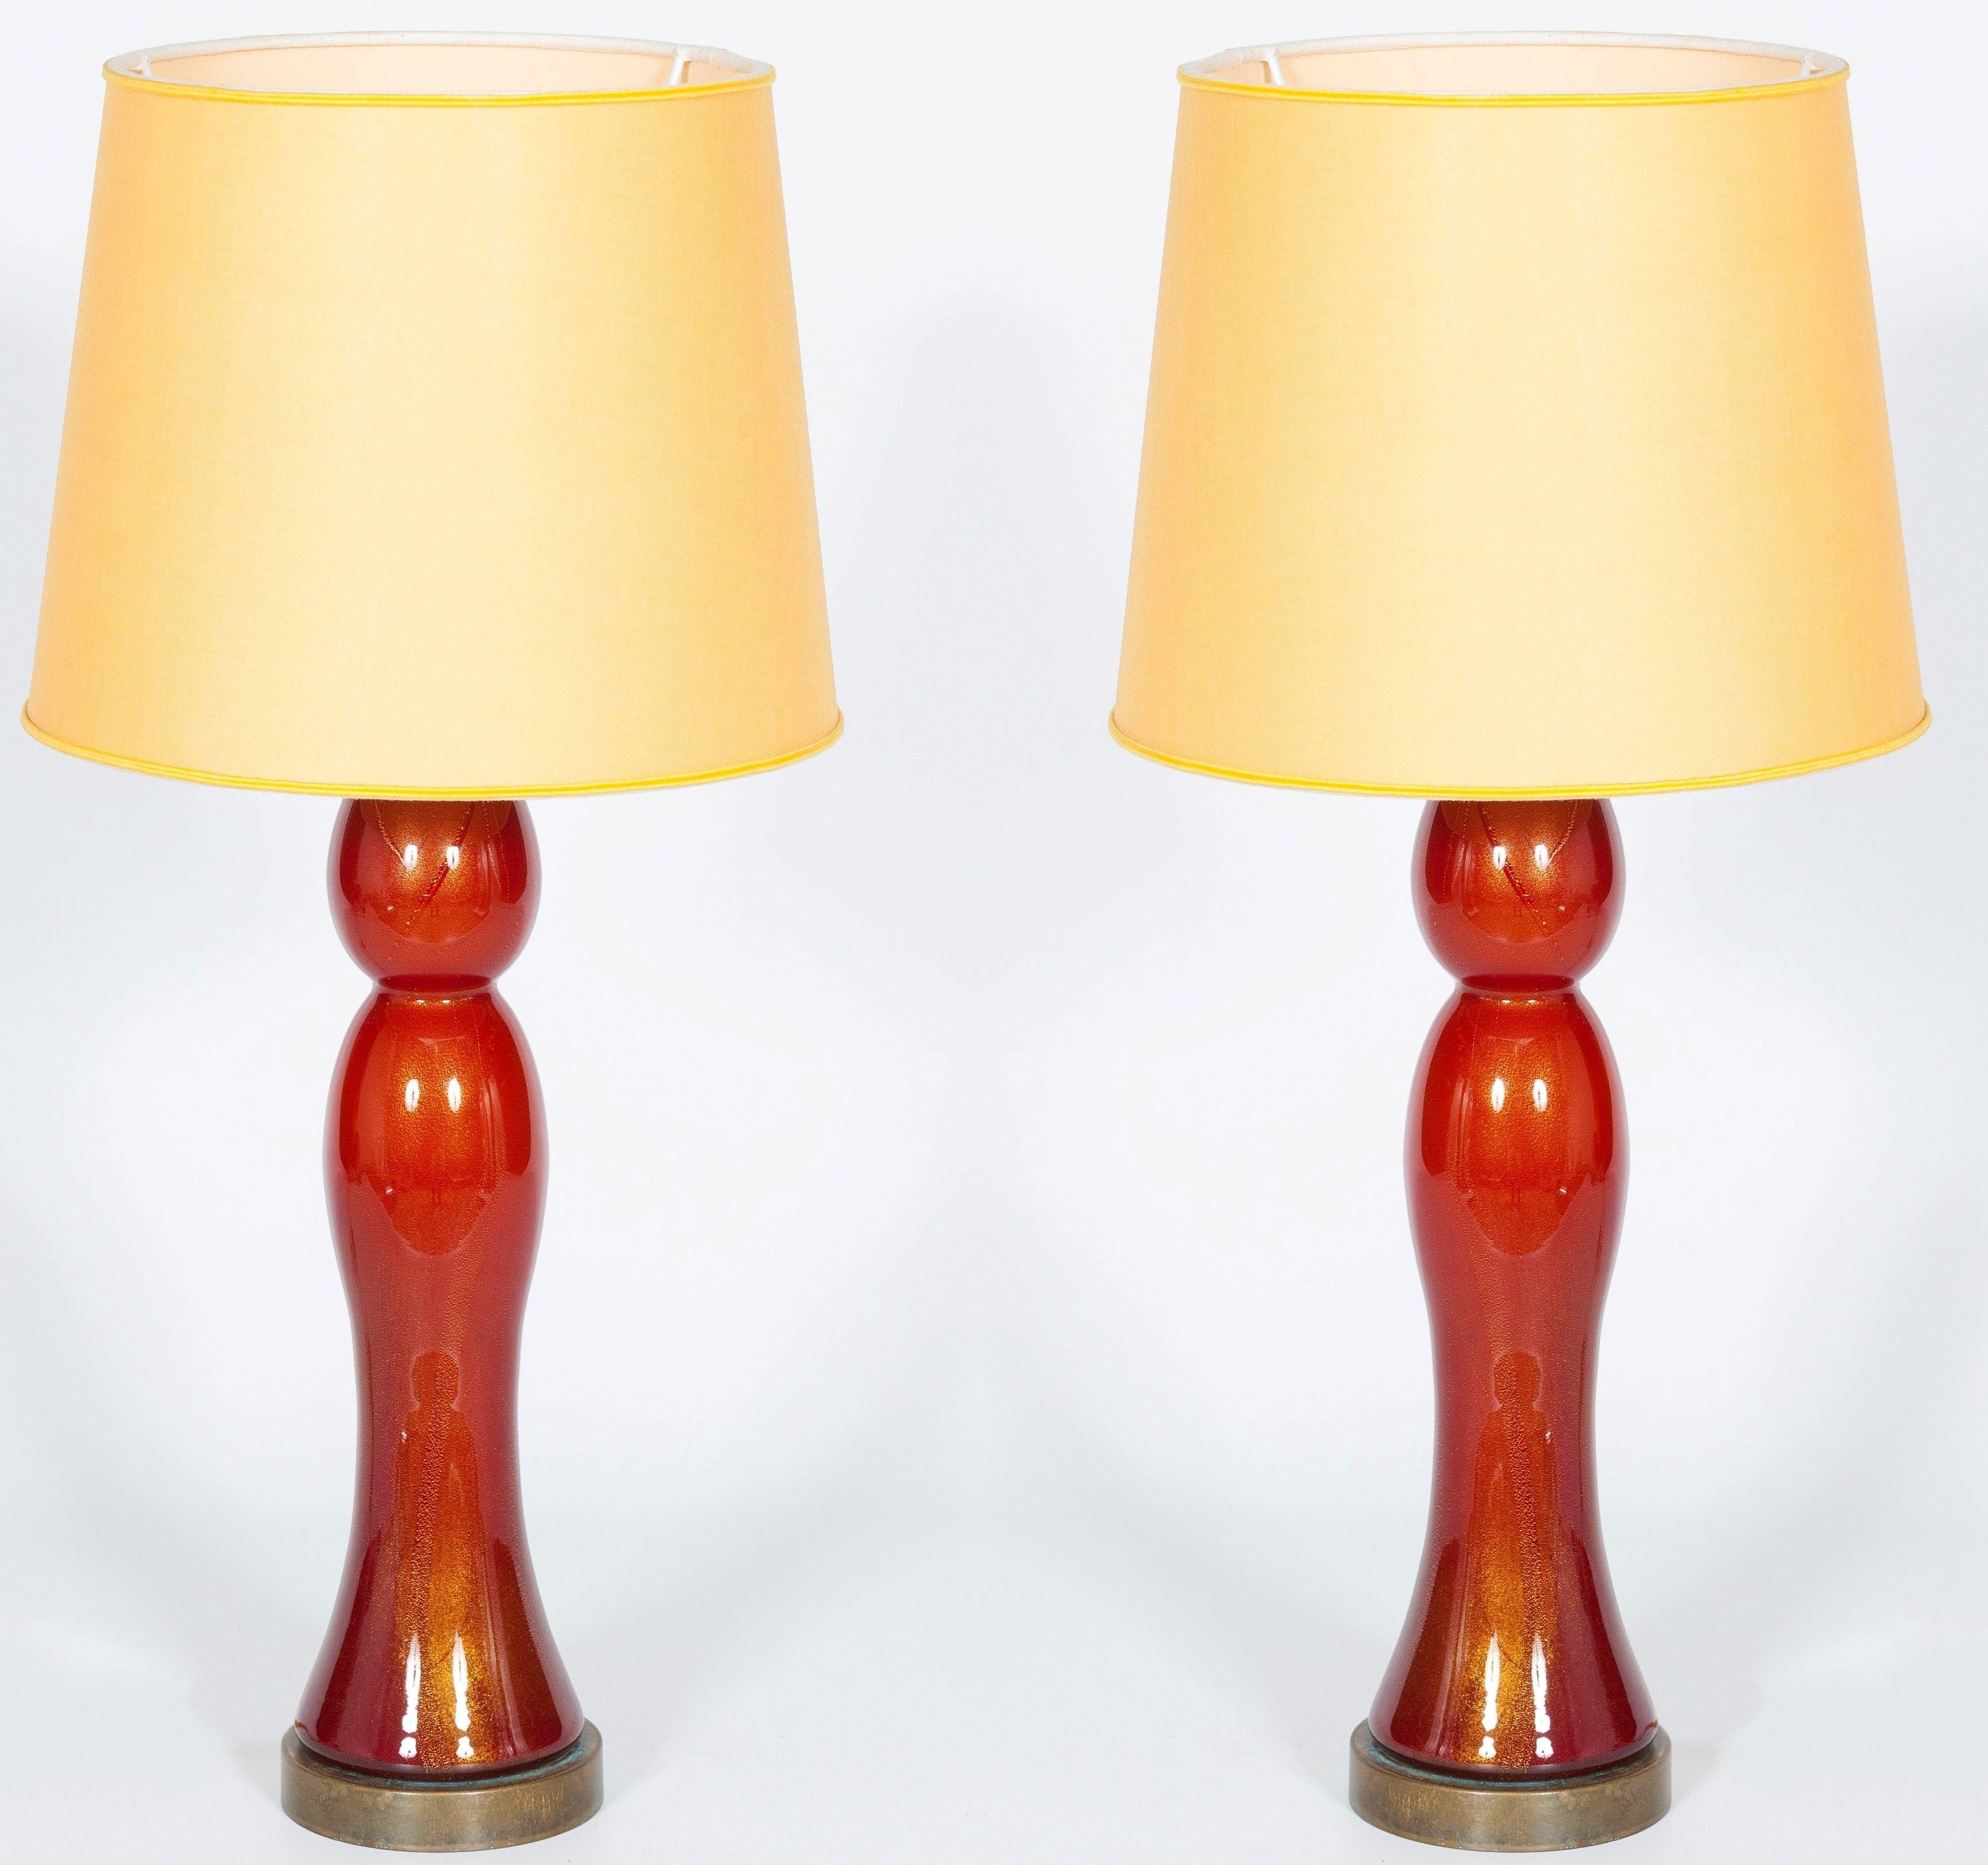 Paire de superbes lampes de table vénitiennes en verre soufflé de Murano, couleur corail avec de l'or en creux 24 carats.
Ces lampes ont été entièrement fabriquées à la main à Murano, l'île vénitienne, dans les années 1980. Leurs formes courbes et